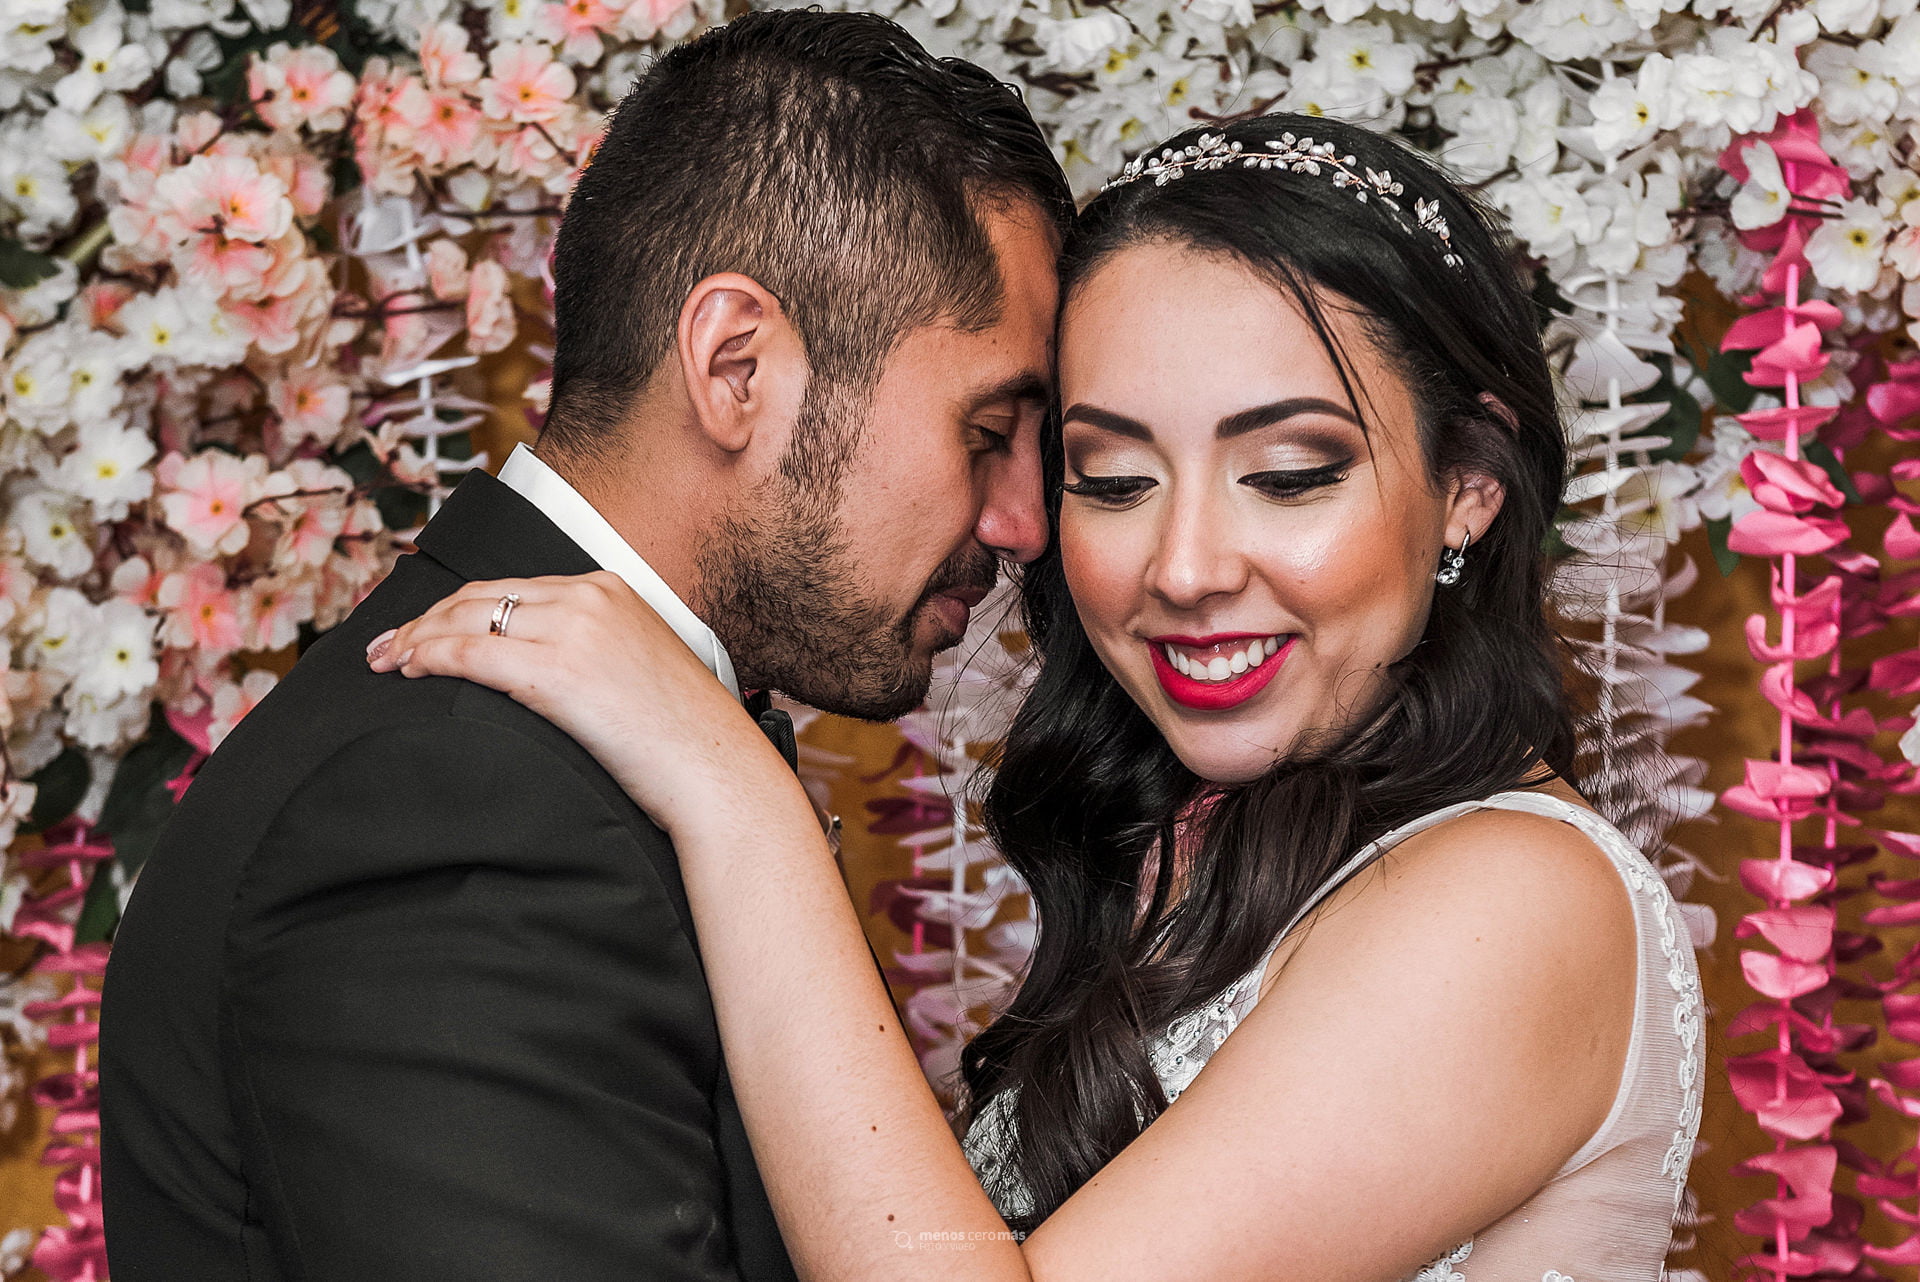 Melissa y Michelle, unidas por el amor, se funden en un tierno abrazo durante su boda civil en Escobedo. Las guirnaldas de flores color melón y blancas crean un marco romántico para este momento inolvidable.